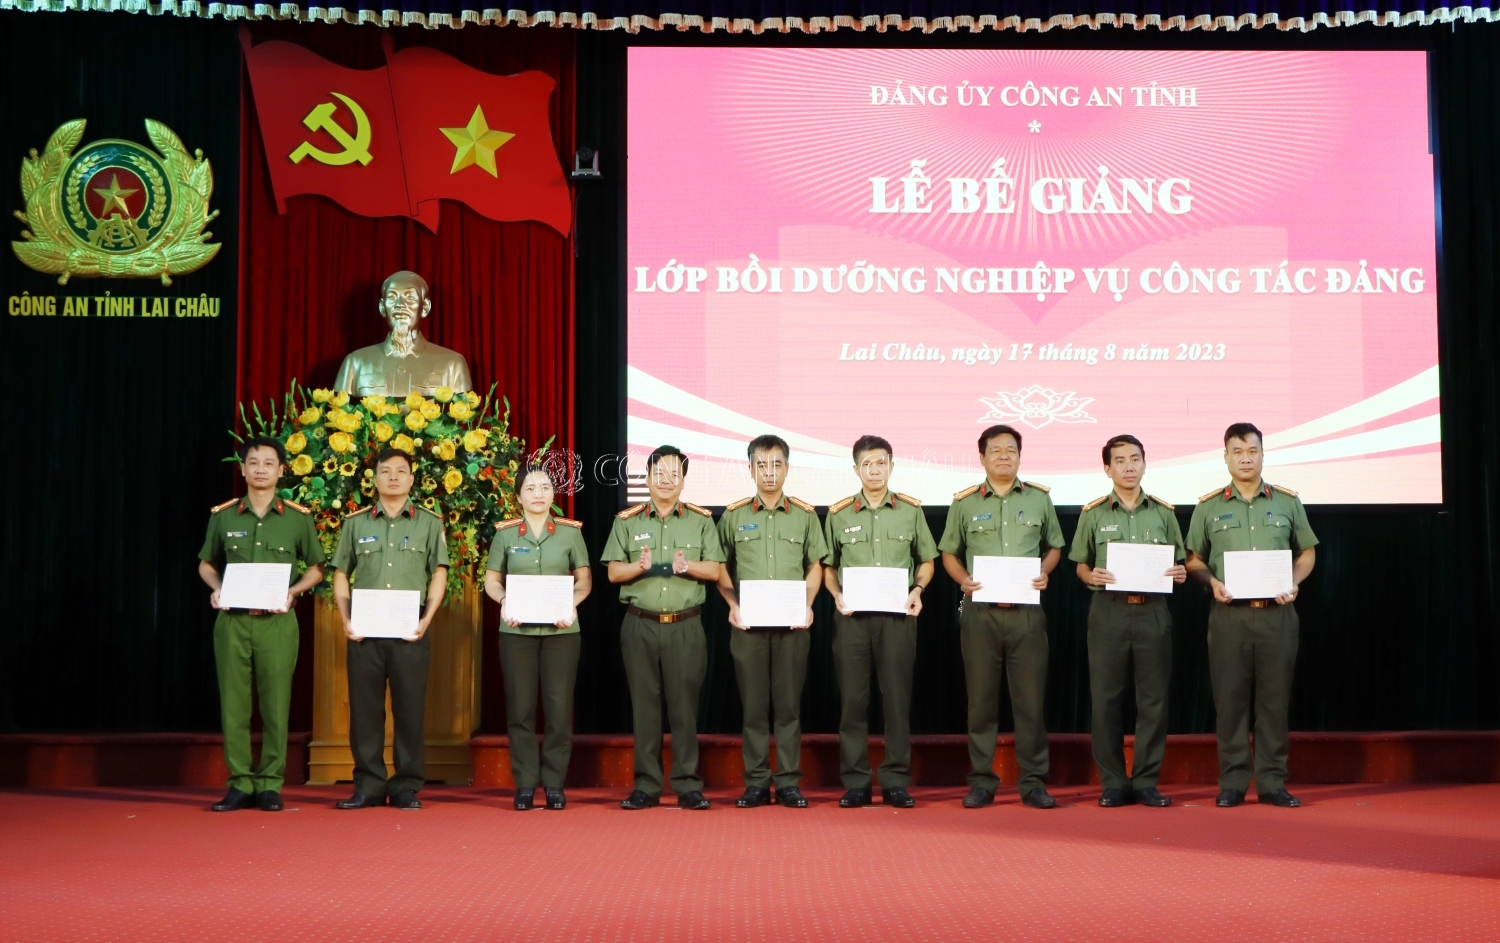 Đại tá Sùng A Súa - Phó Bí thư Đảng ủy, Phó giám đốc Công an tỉnh trao chứng chỉ các học viên